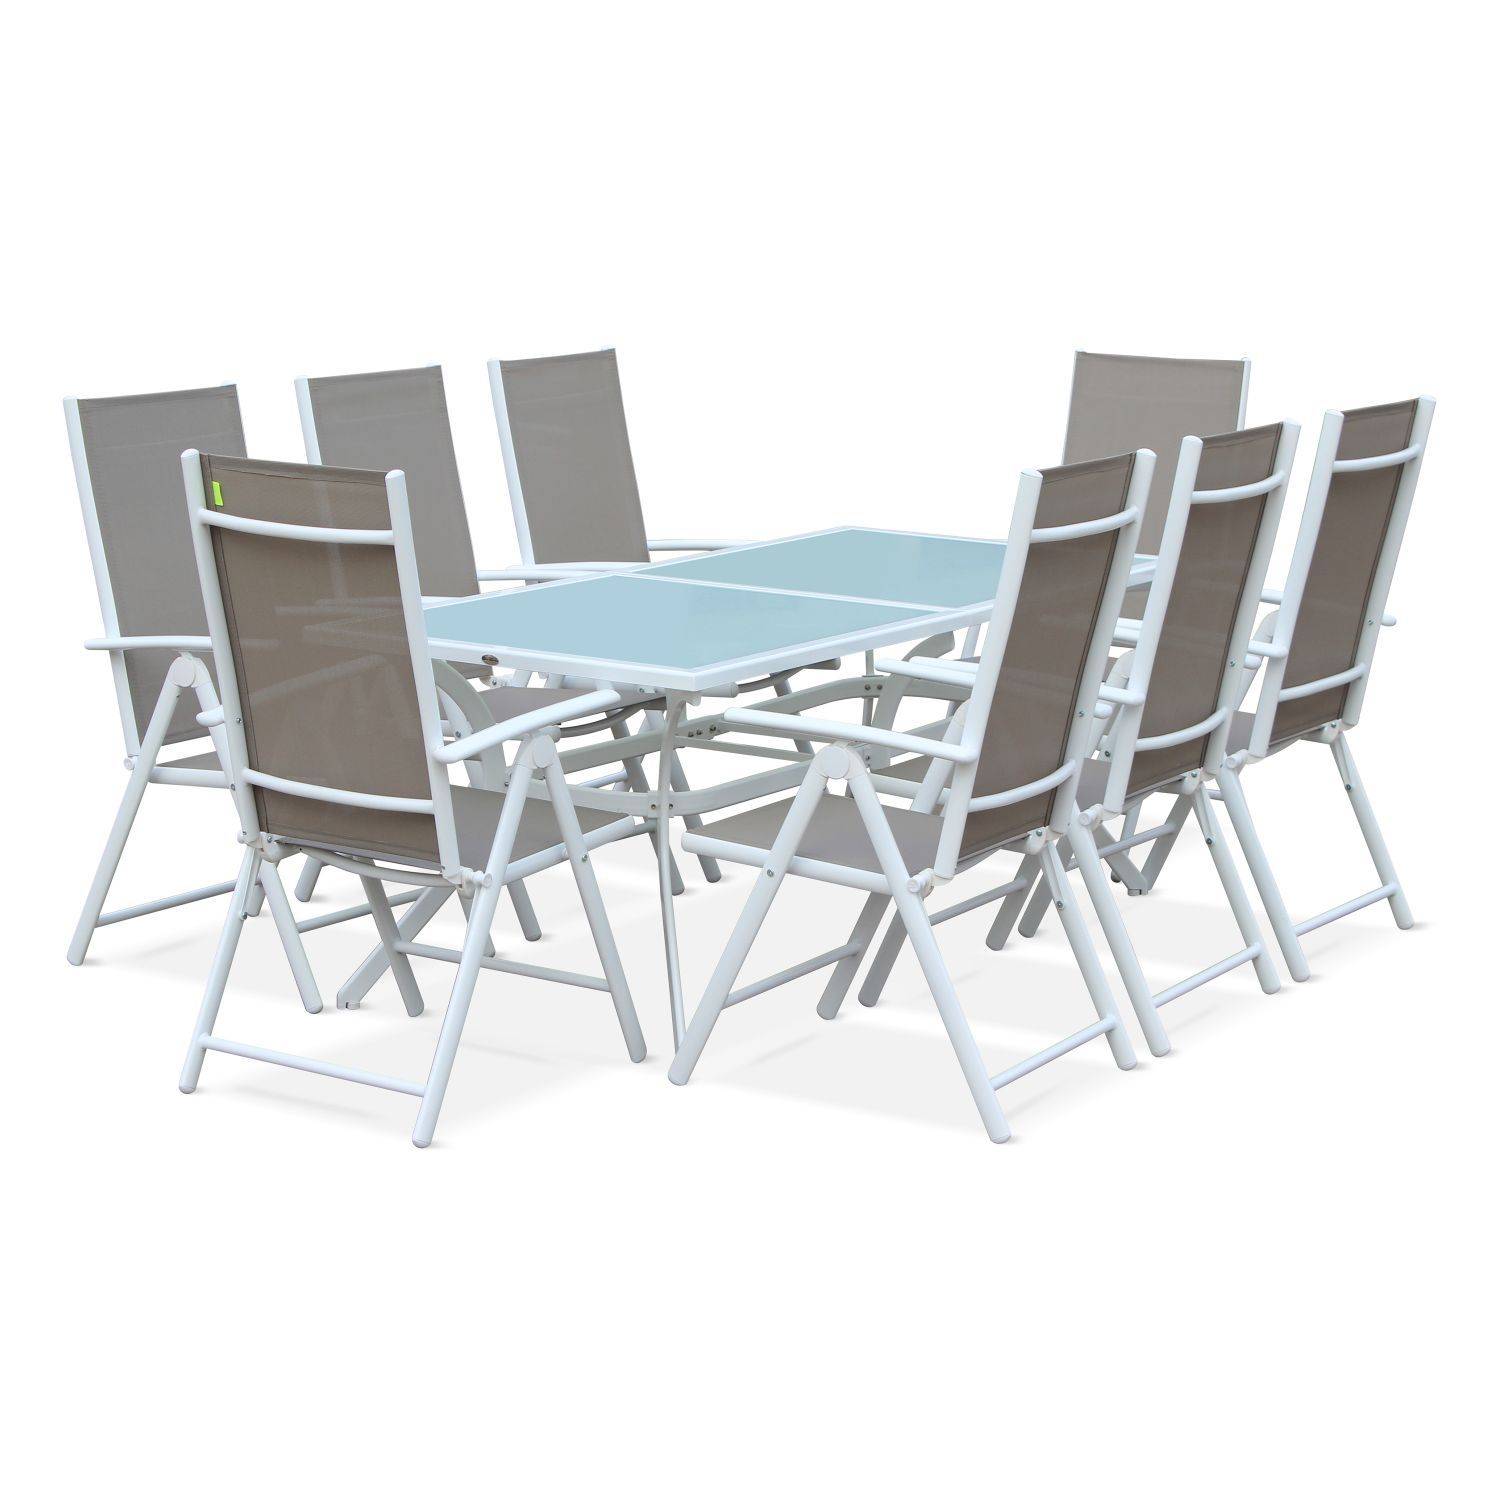 Set da giardino in alluminio e textilene - modello: Naevia - colore: Bianco/Talpa - 8 posti - 1 grande tavolo rettangolare, 8 poltrone pieghevoli Photo1